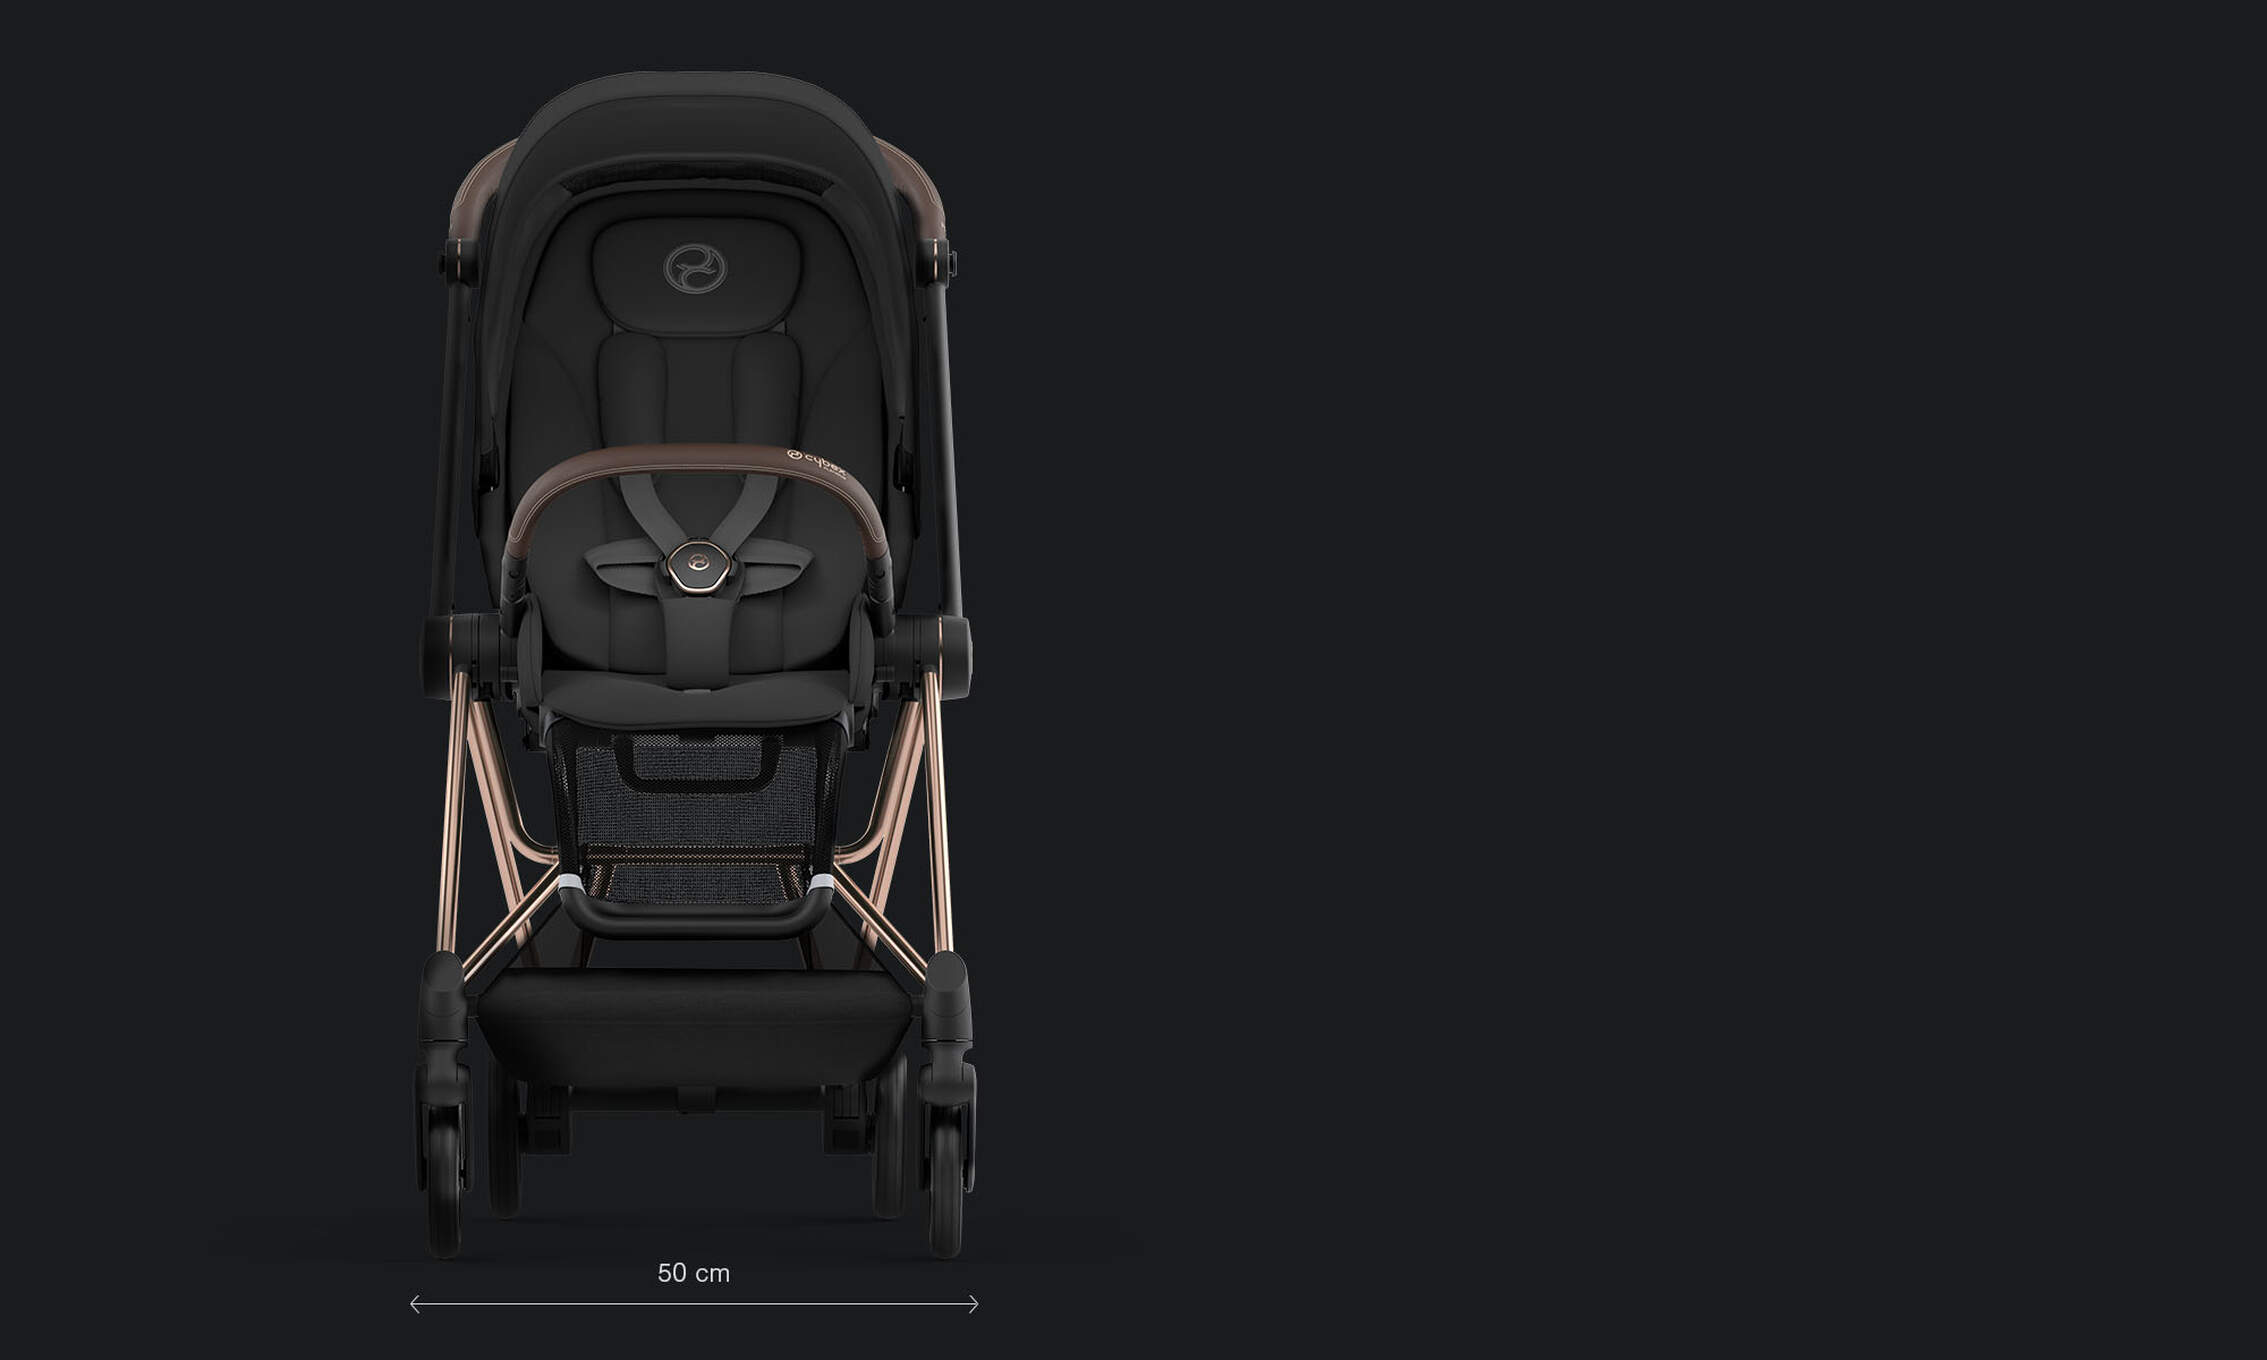 CYBEX Platinum Mios Kinderwagen Leicht und kompakt Funktion